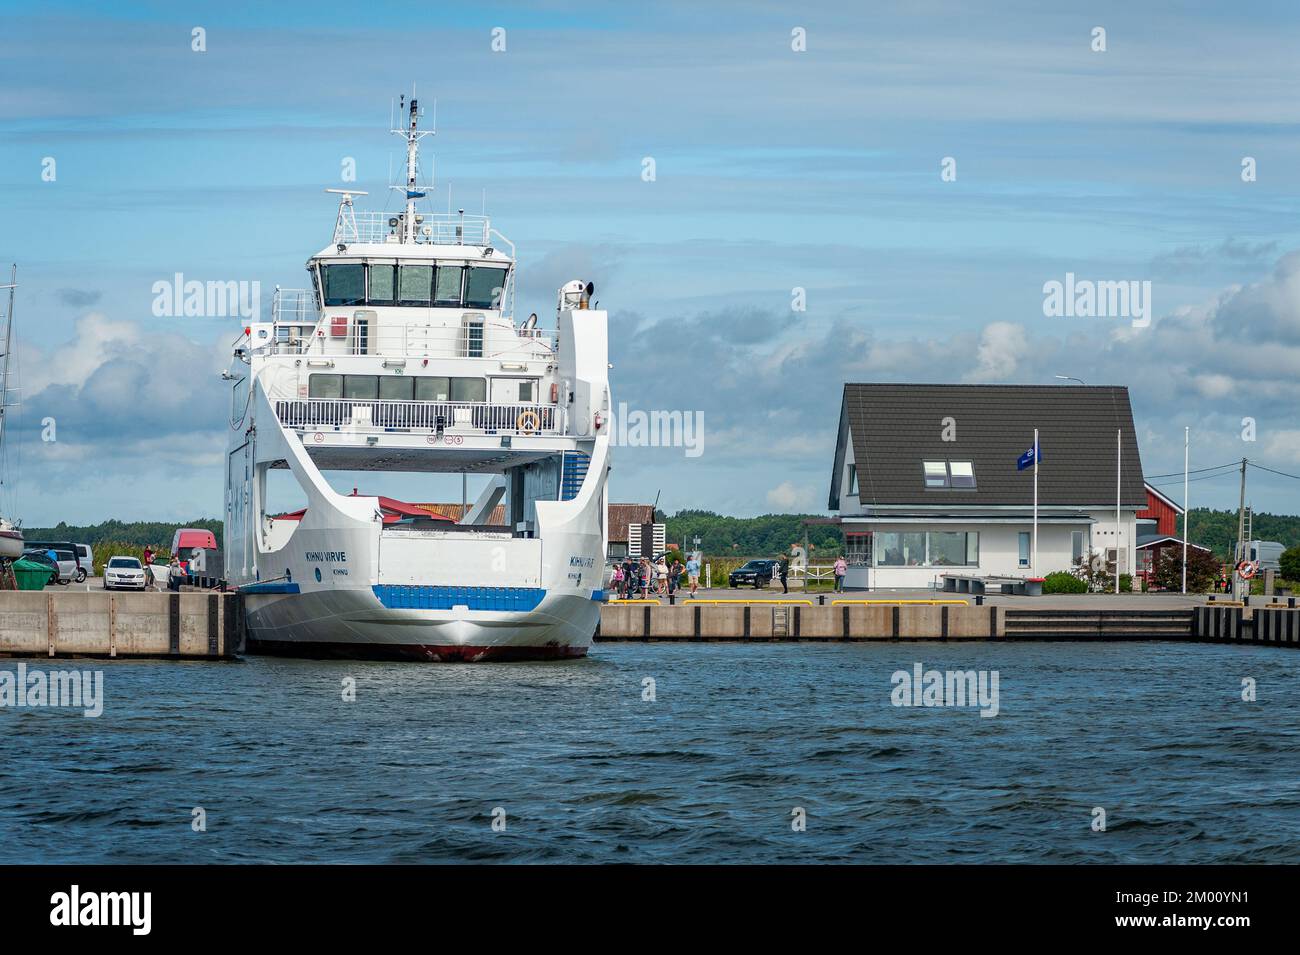 Munalaiu, Estland, 3. August 2022: Die Fähre am Hafenpier im Sommer. Konzept von Transport, Fähre, Transport und Reise. Stockfoto